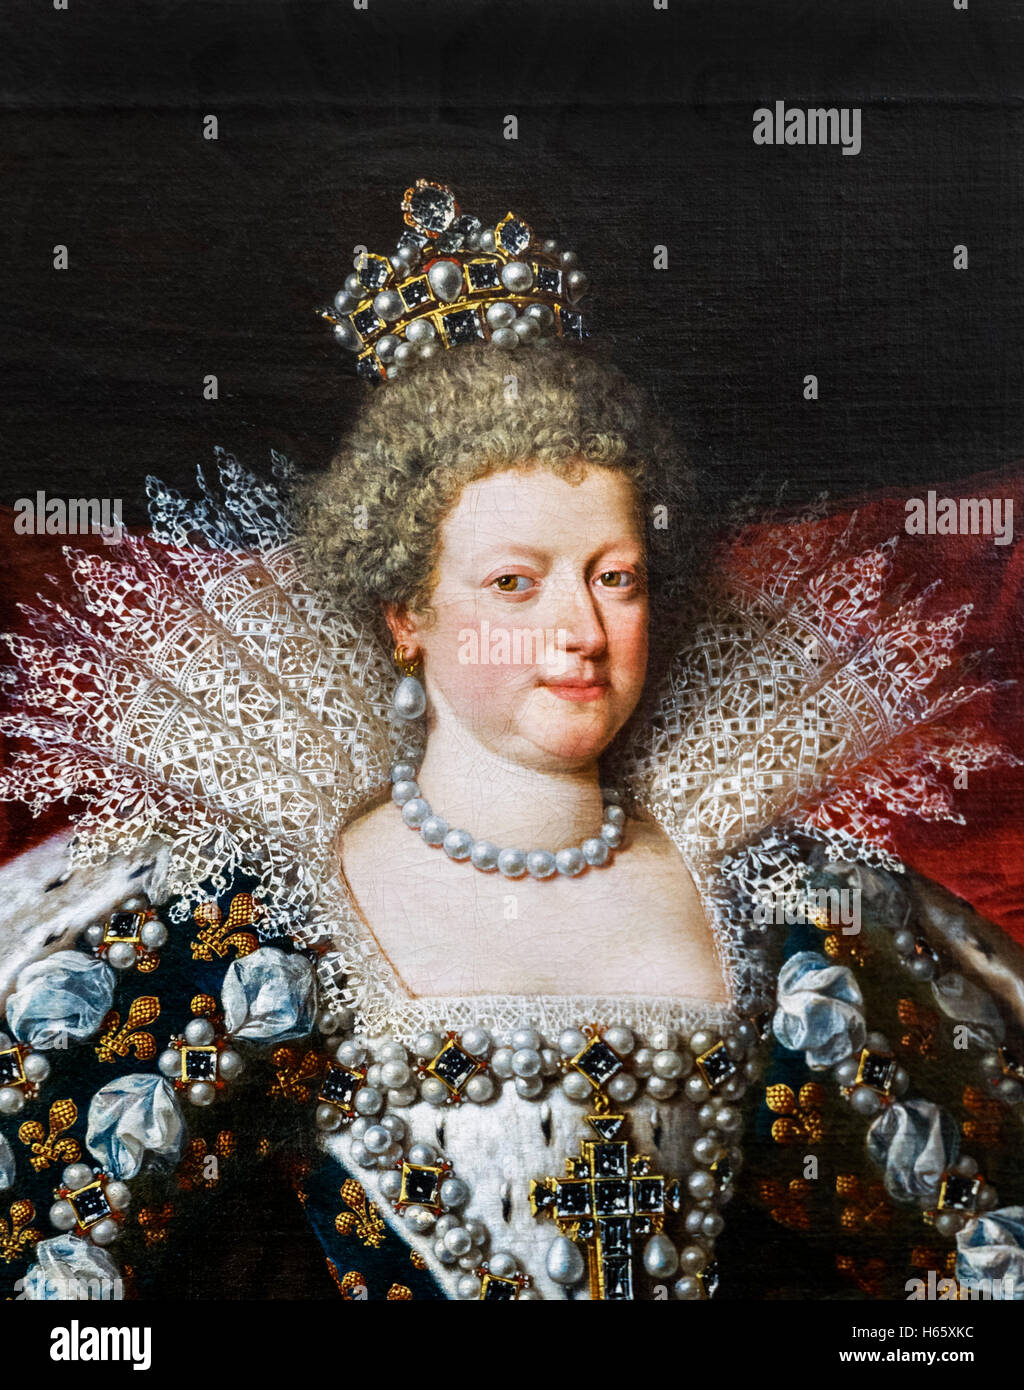 Marie de Médicis (Marie de Médicis : 1575-1642) a été reine de France comme la deuxième épouse du roi Henri IV de France. Portrait c.1609-10 par Franz Pourbus le jeune. C'est un détail d'une plus grande peinture, H65XK2 Banque D'Images